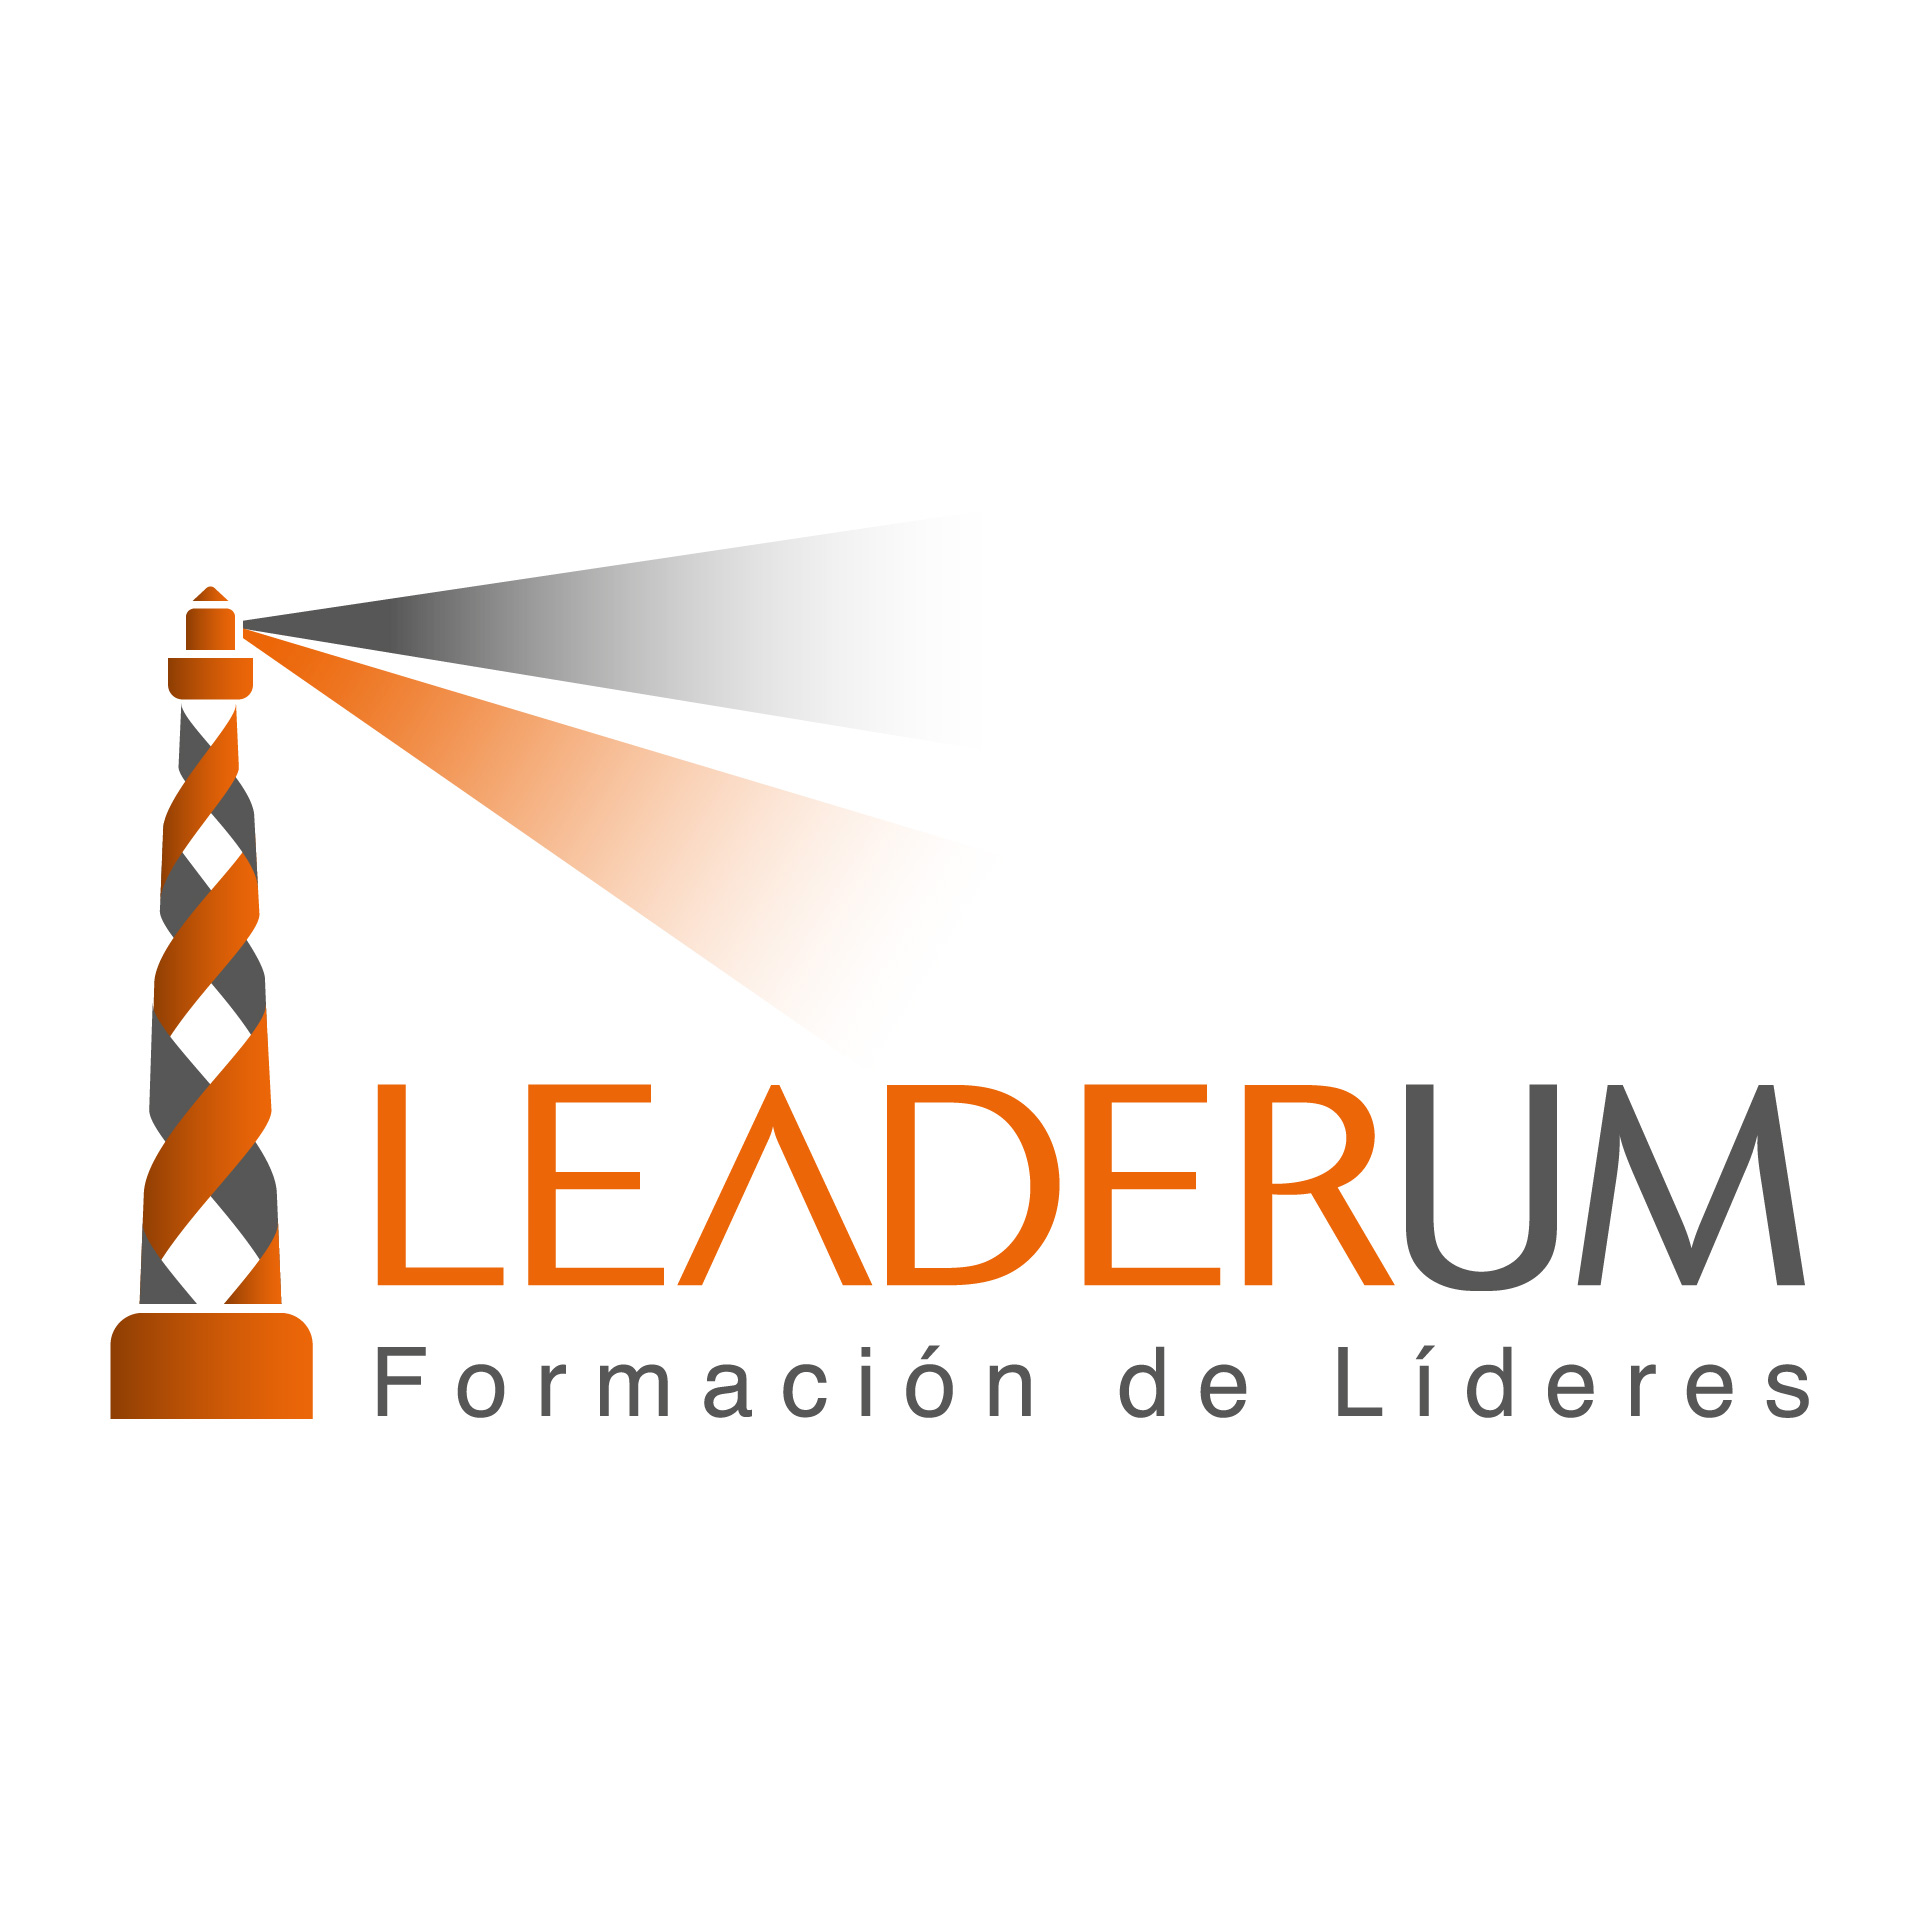 Diseño de Identidad Visual y Logotipo para la marca Leaderum